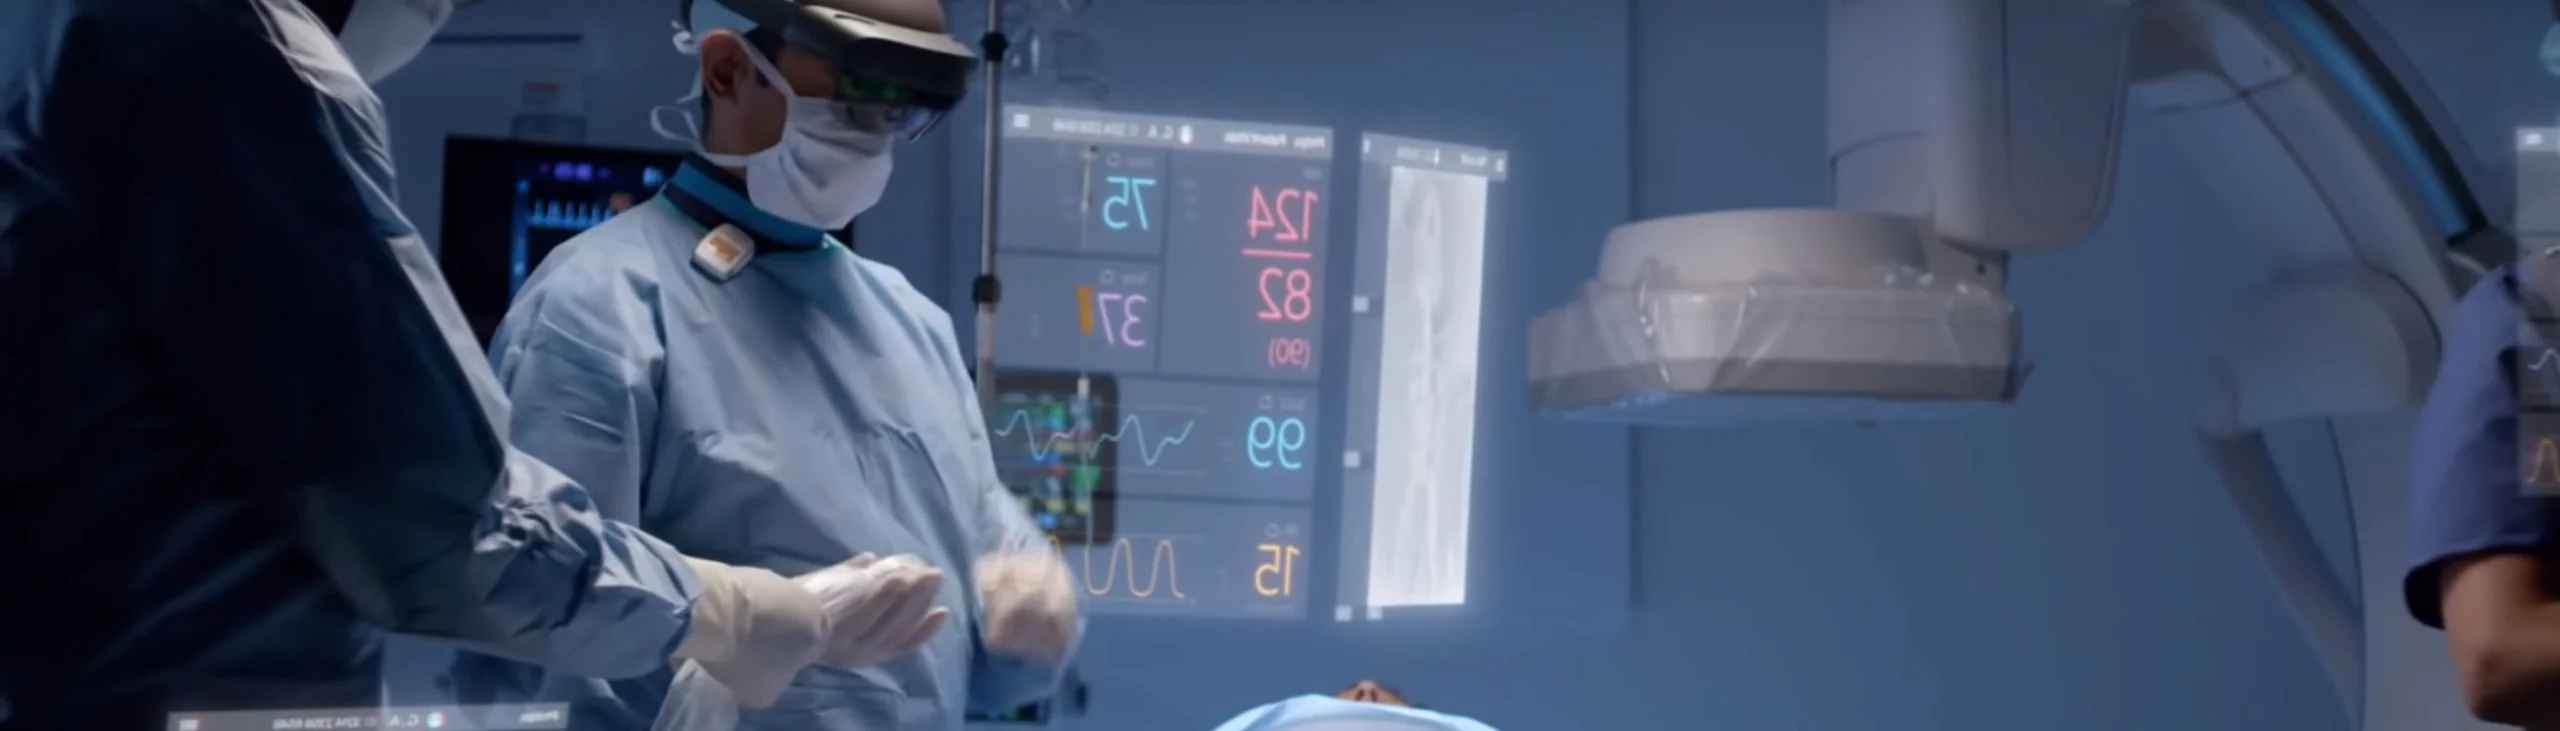 médicos usando gafas de realidad virtual durante una cirugía en un quirófano